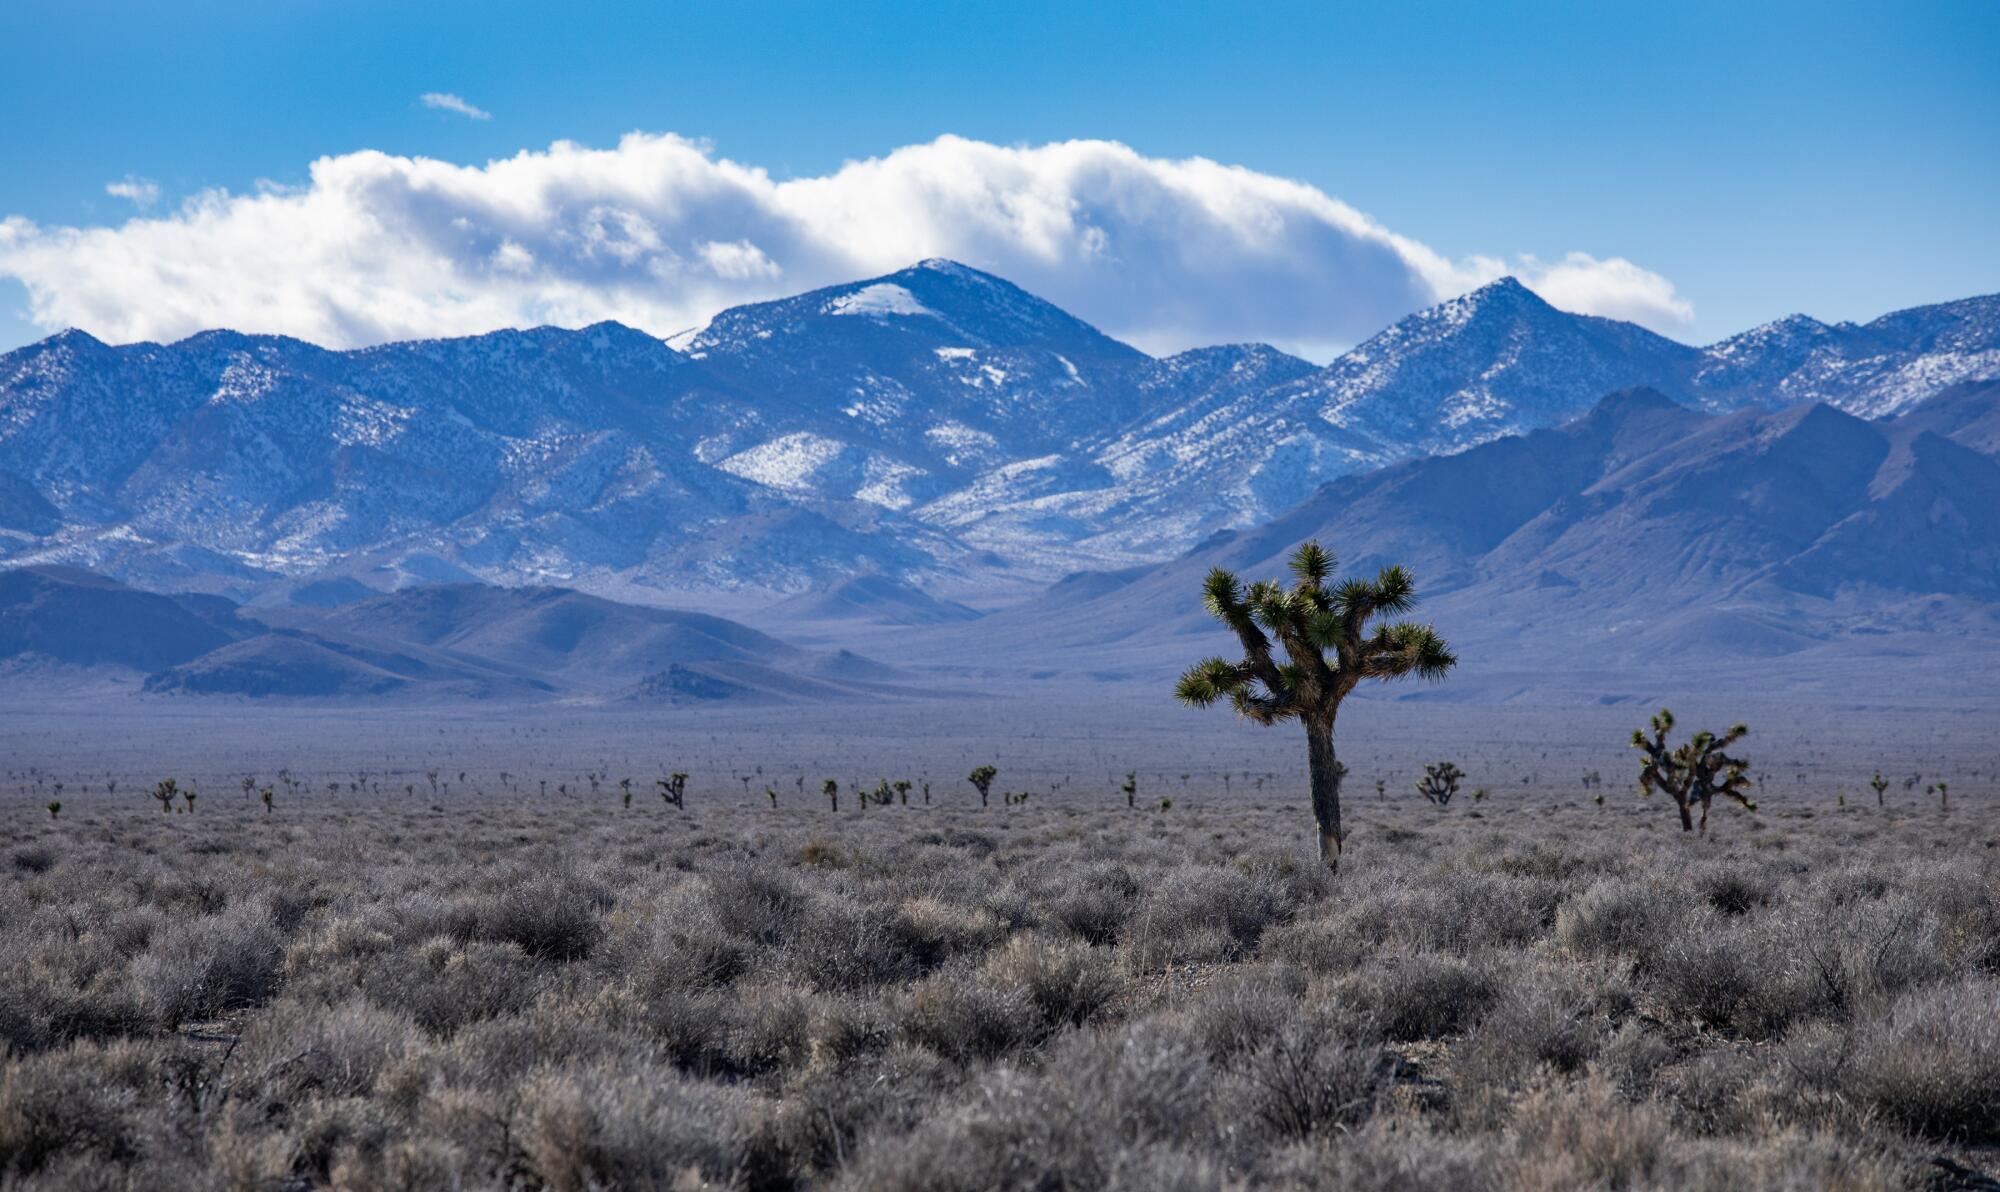 ภูเขาที่ปกคลุมไปด้วยหิมะในอุทยานแห่งชาติ Death Valley ตั้งตระหง่านเหนือต้น Joshua บนที่ราบ Sarcobatus